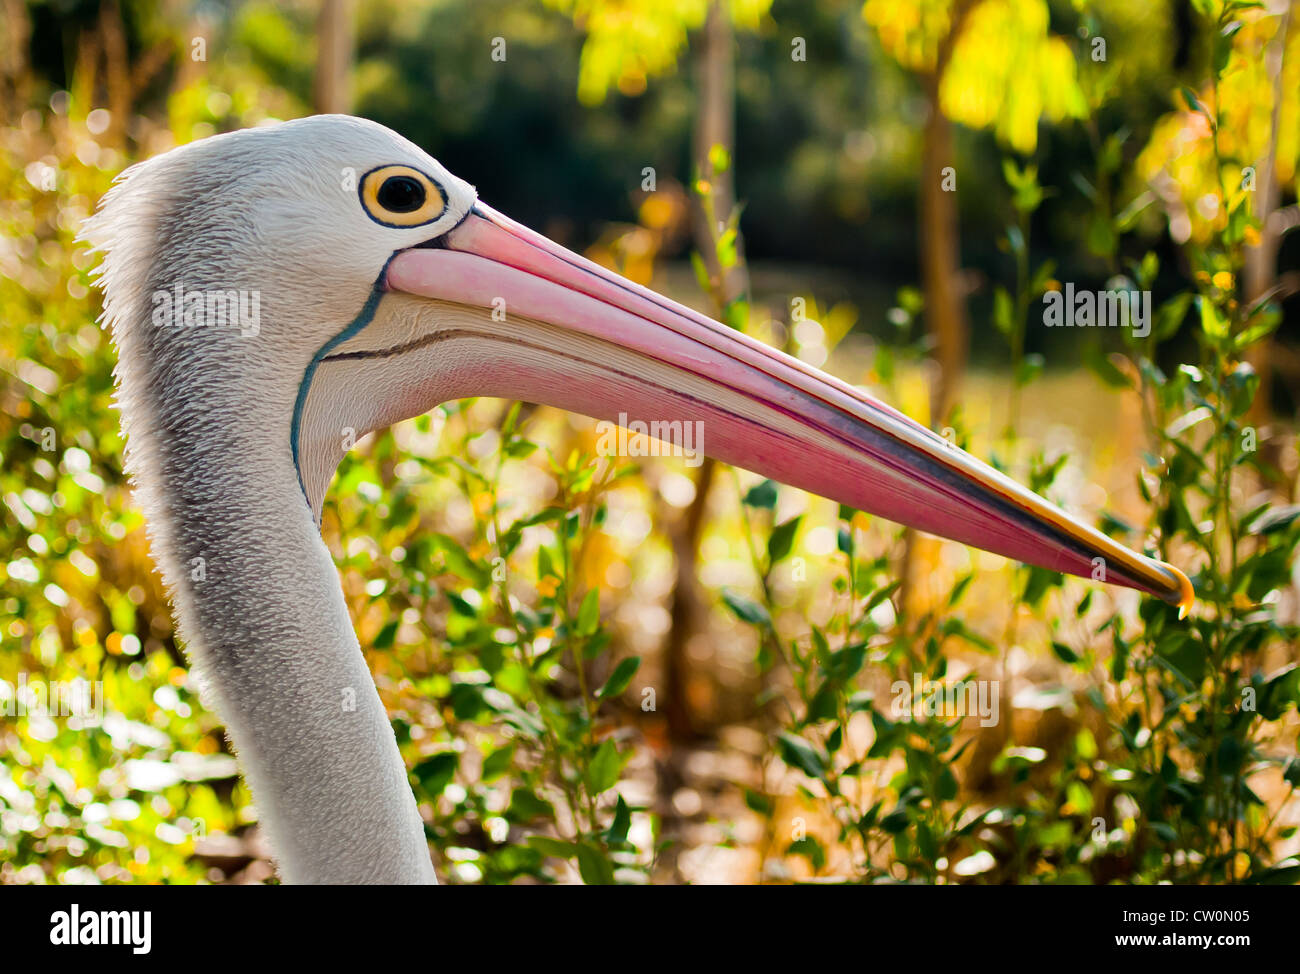 Australian pelican dans son habitat naturel Banque D'Images